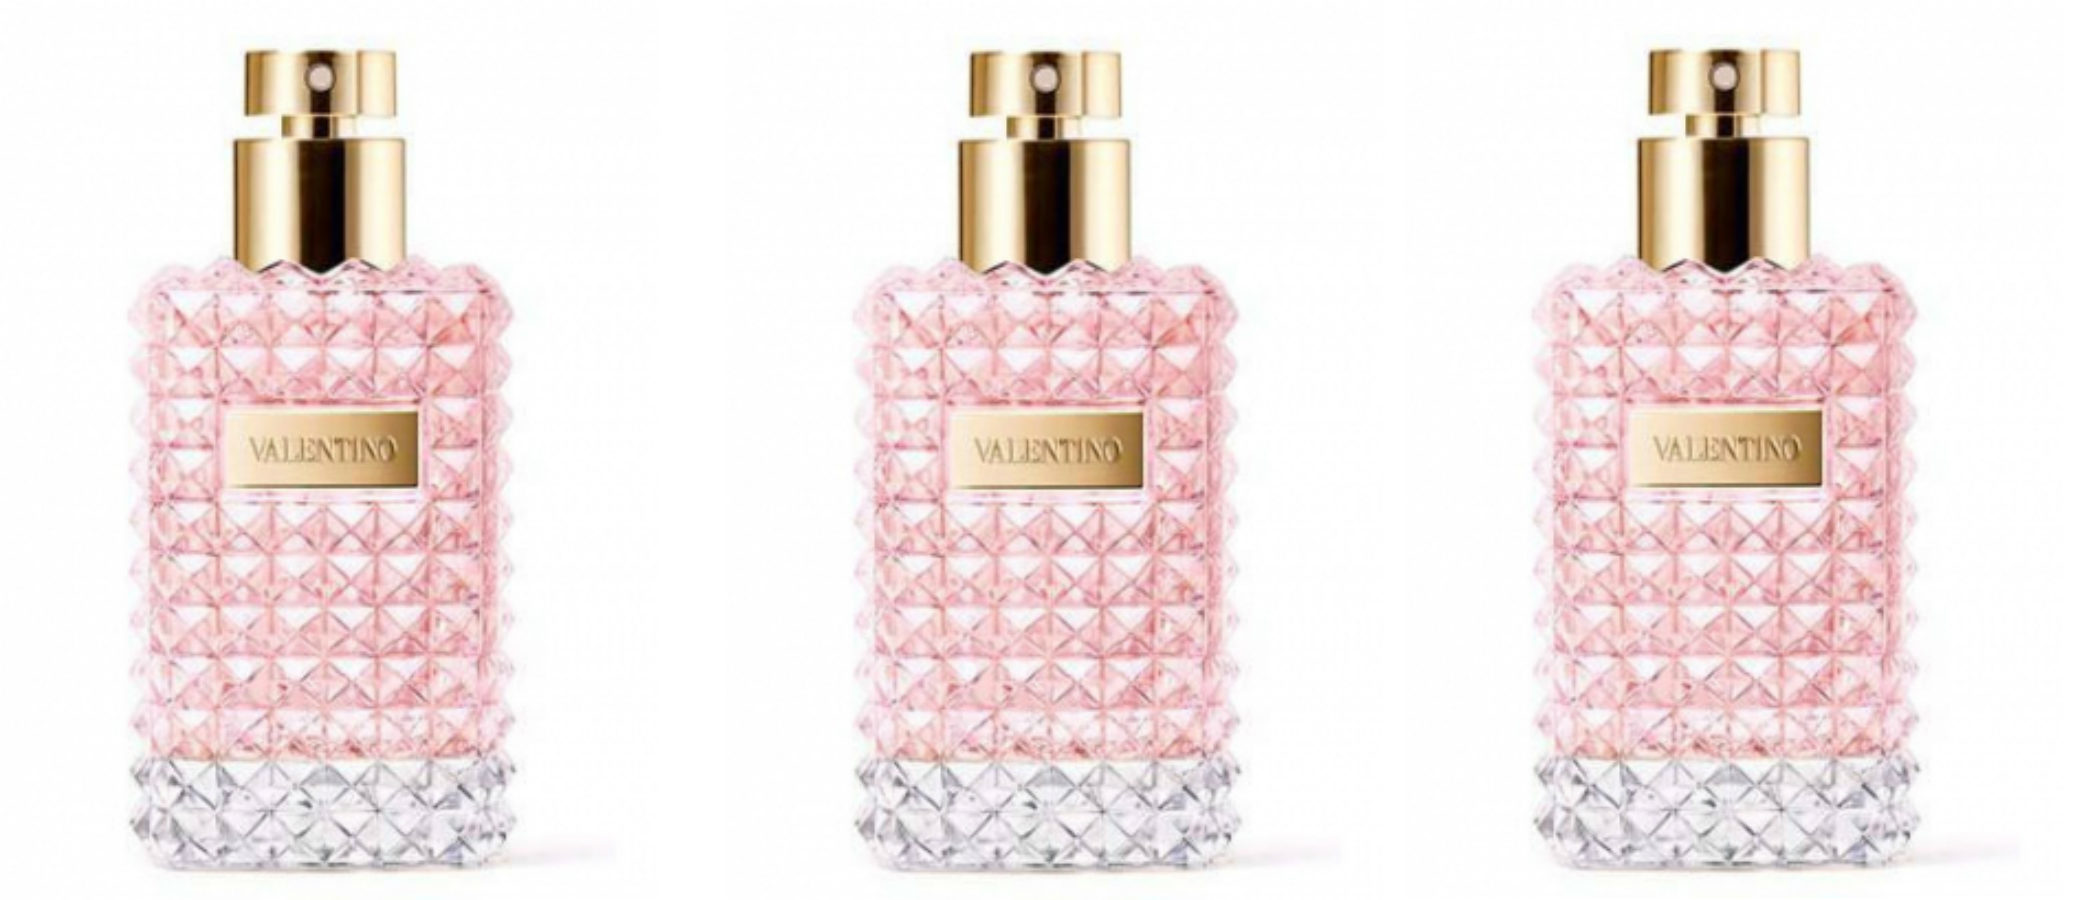 'Valentino Donna Acqua', el nuevo perfume de Valentino